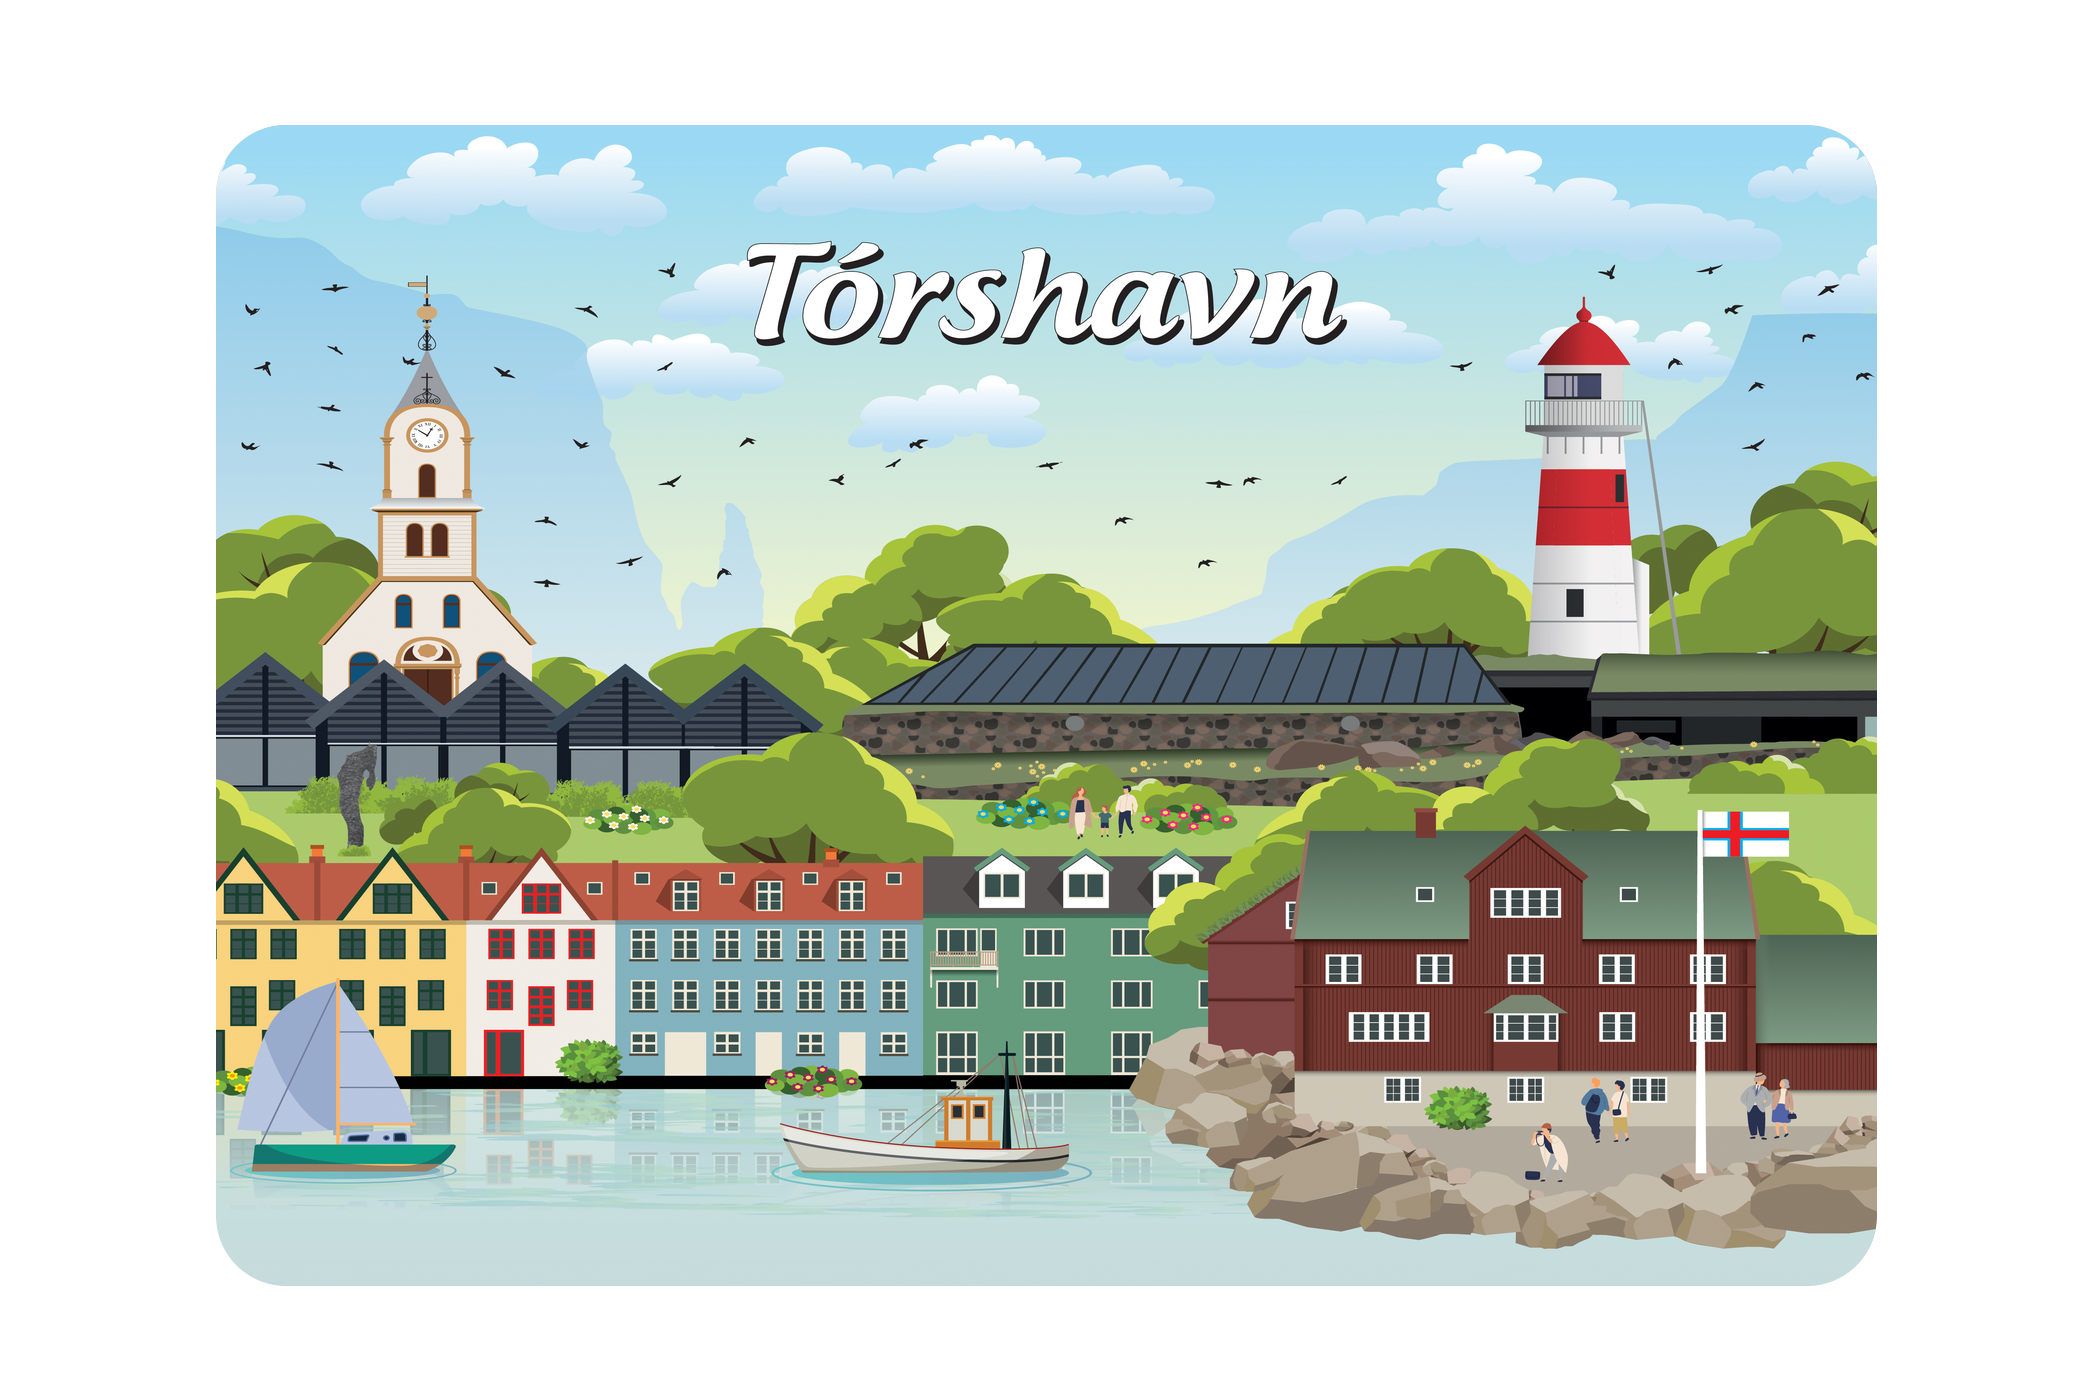 Torshavn - Bykoncept